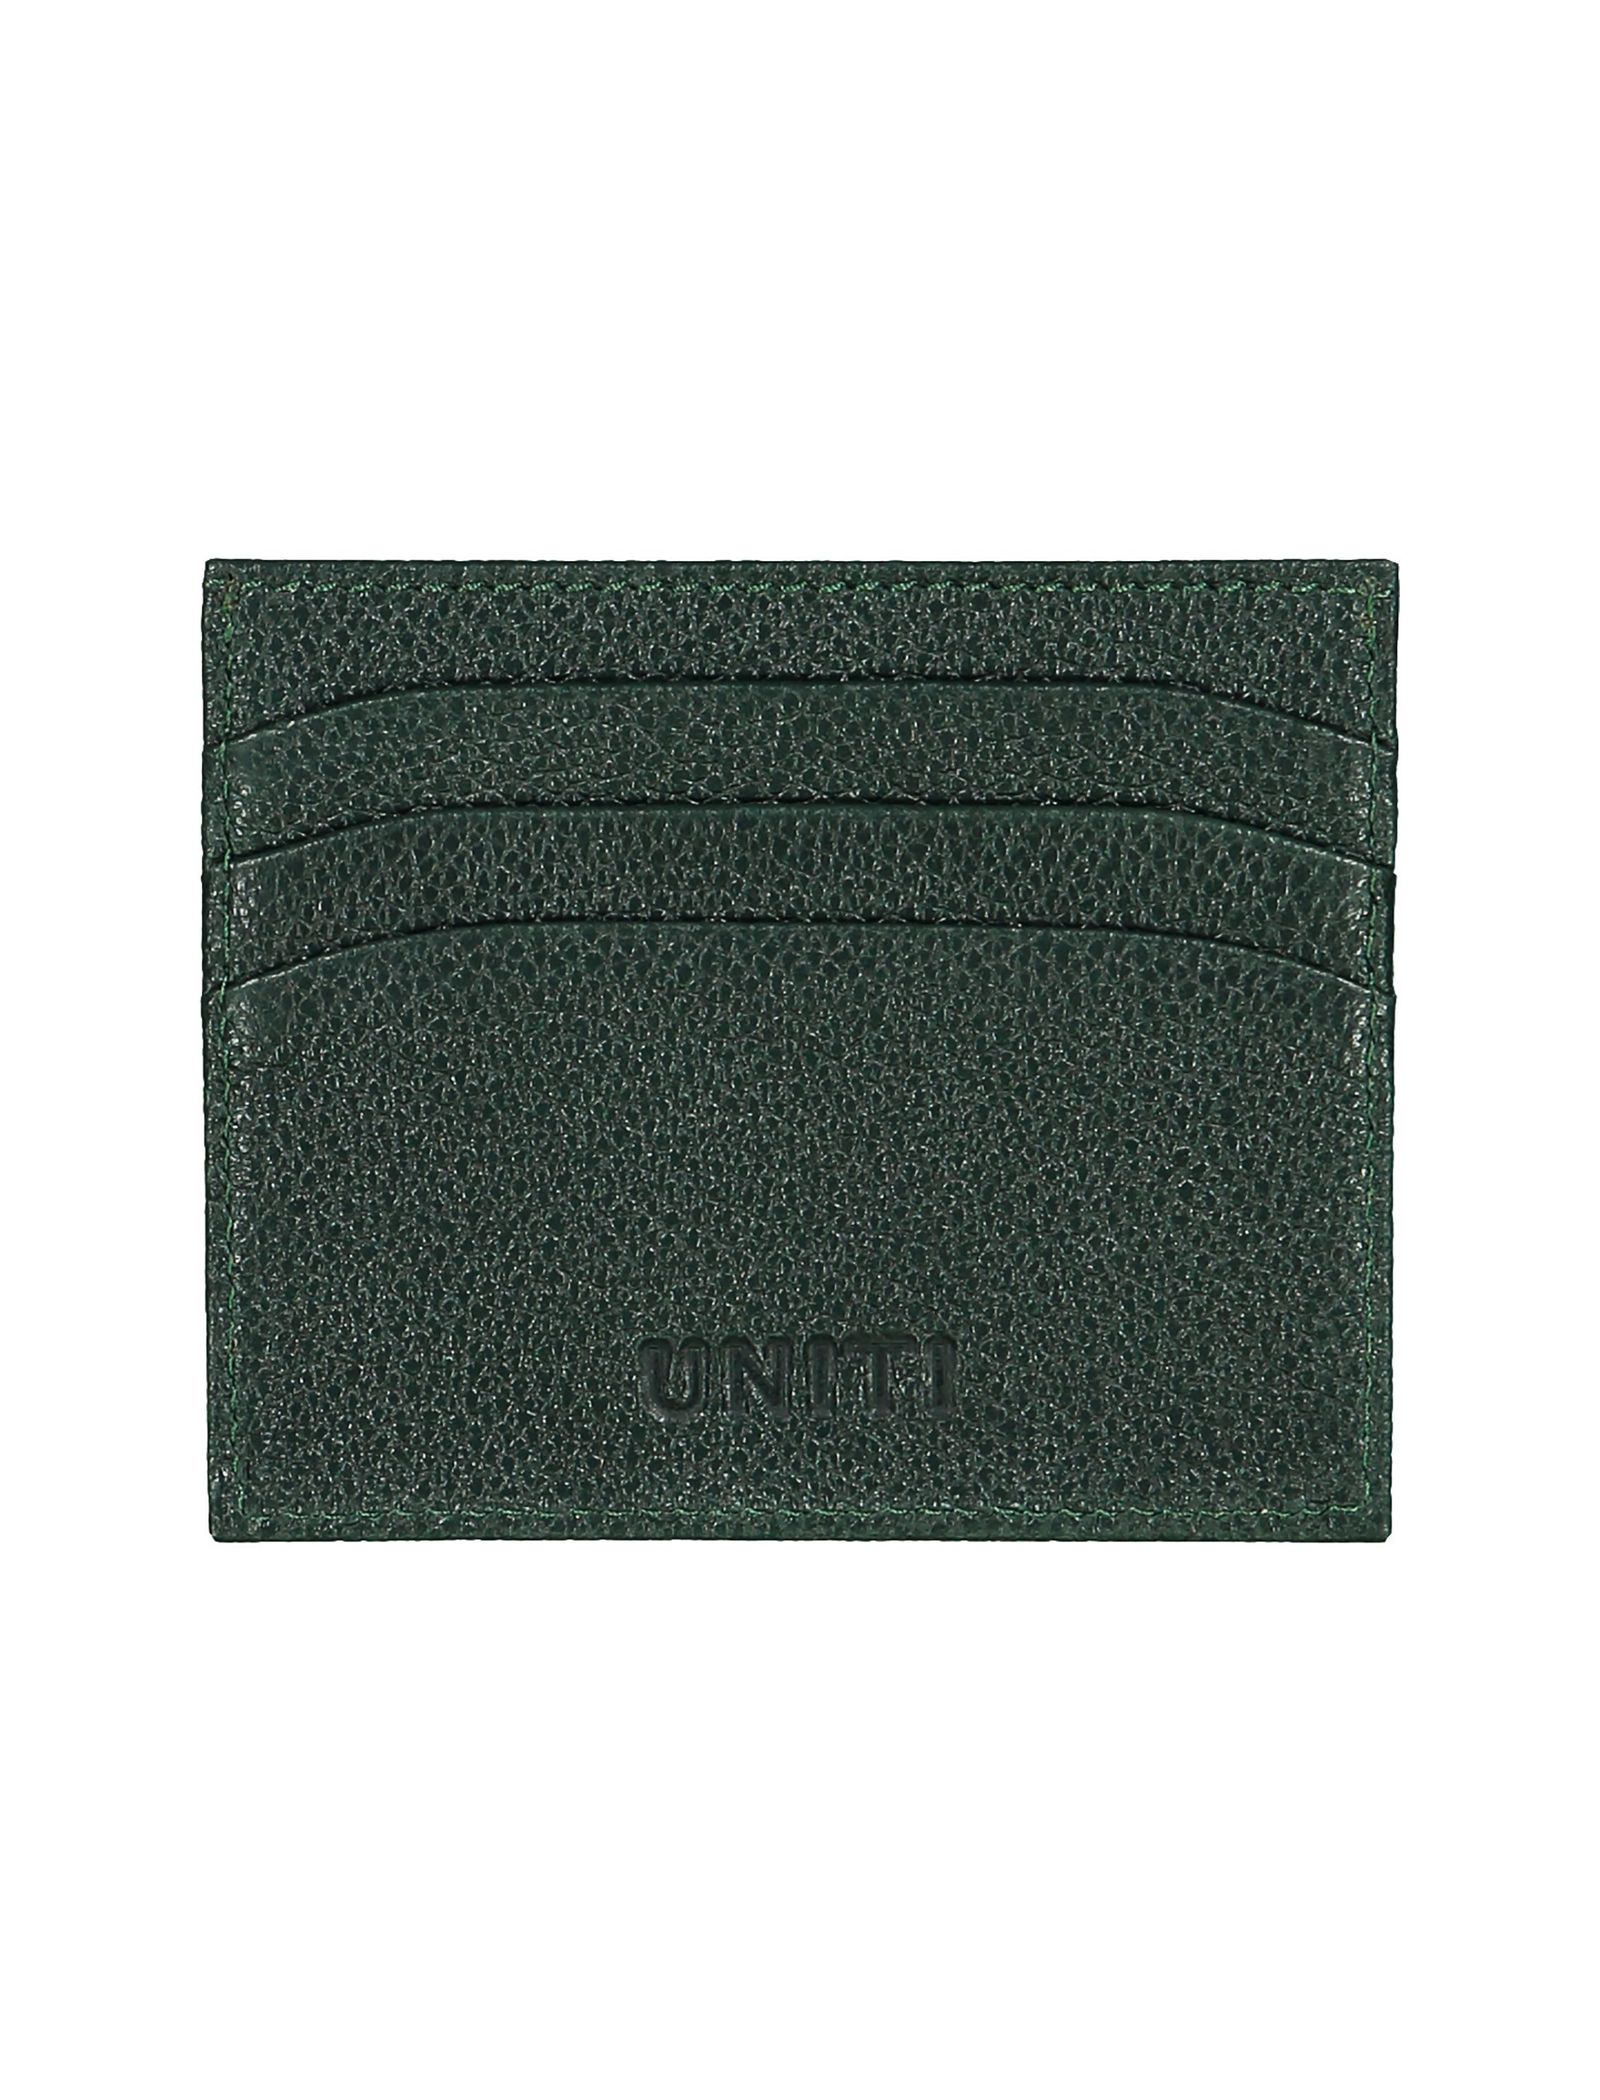 کیف کارت بزرگسال - یونیتی - سبز - 1